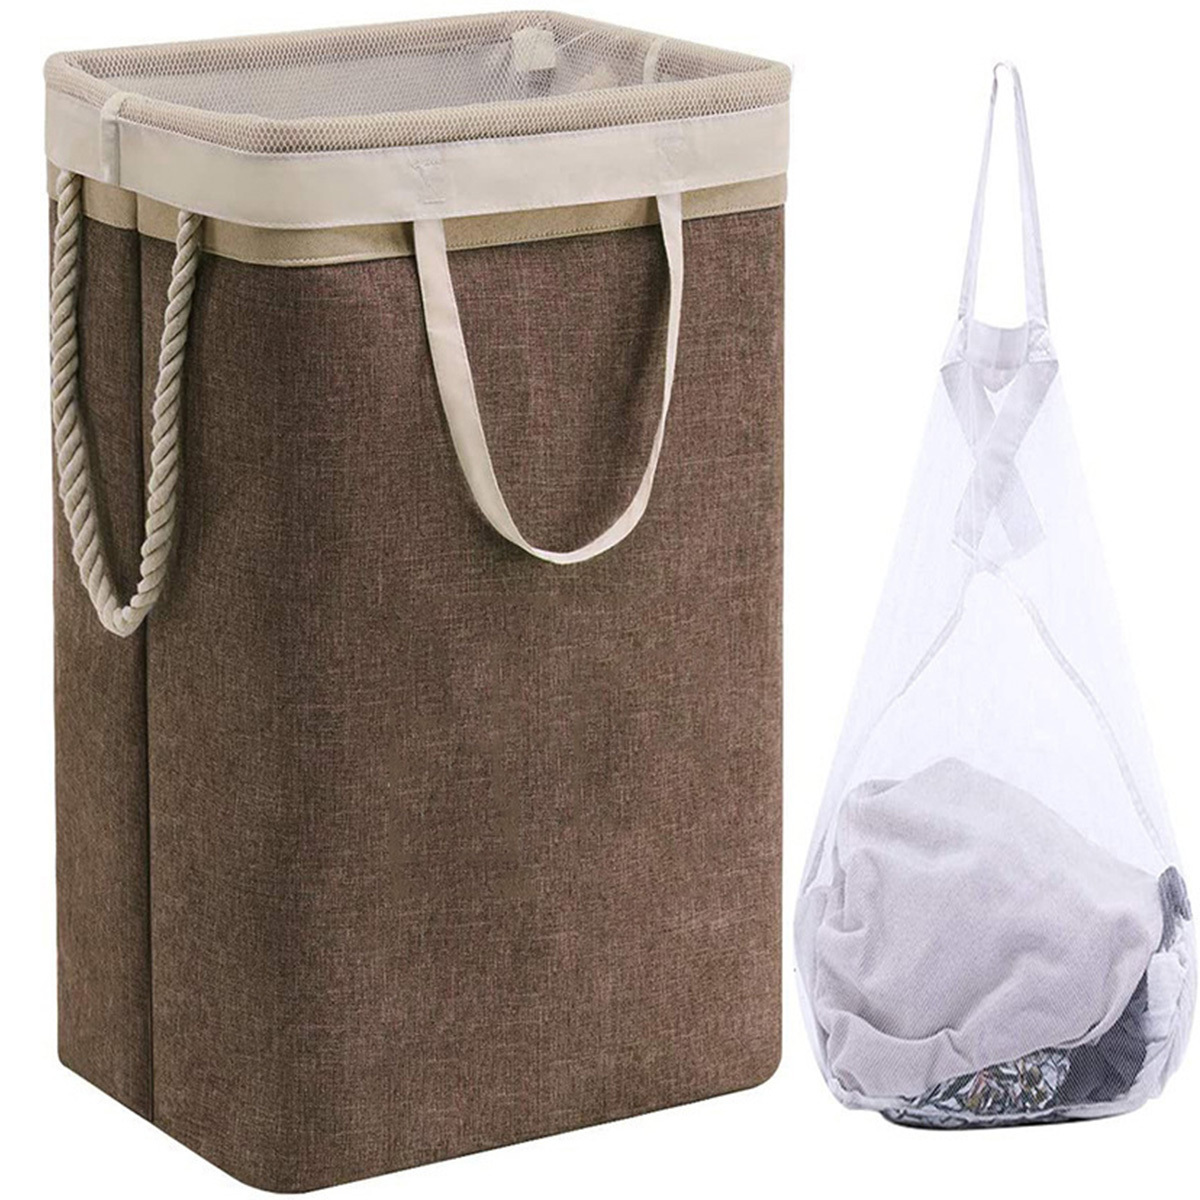 1 cesta de almacenamiento plegable, cestas de plástico para